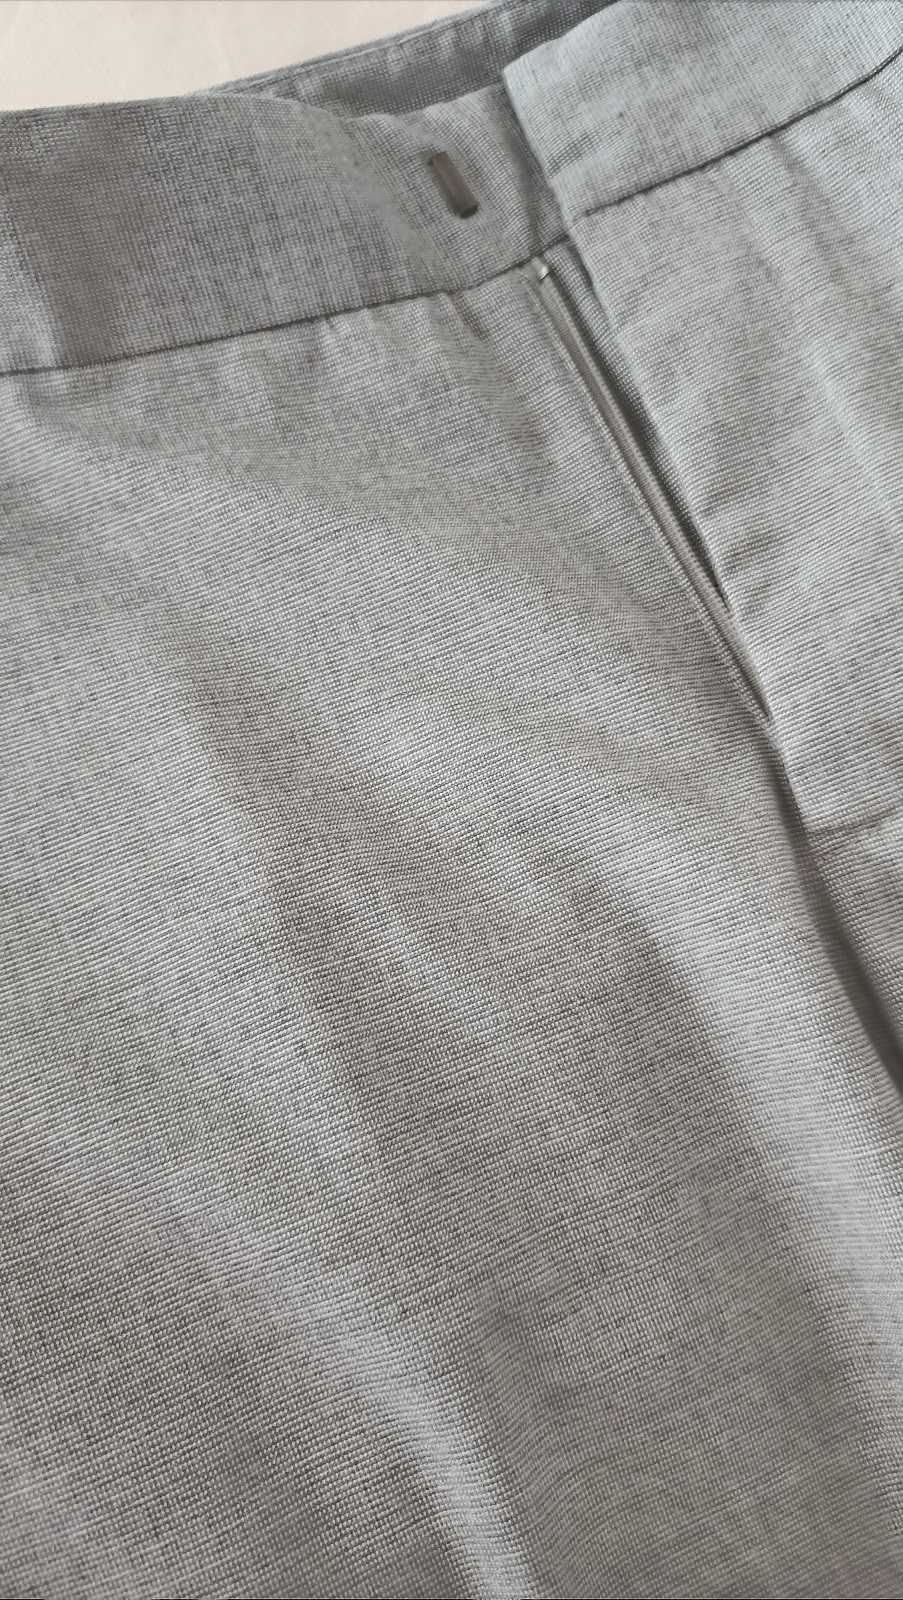 Spodnie Zara Basic rurki slim fit, szare, rozmiar 36.